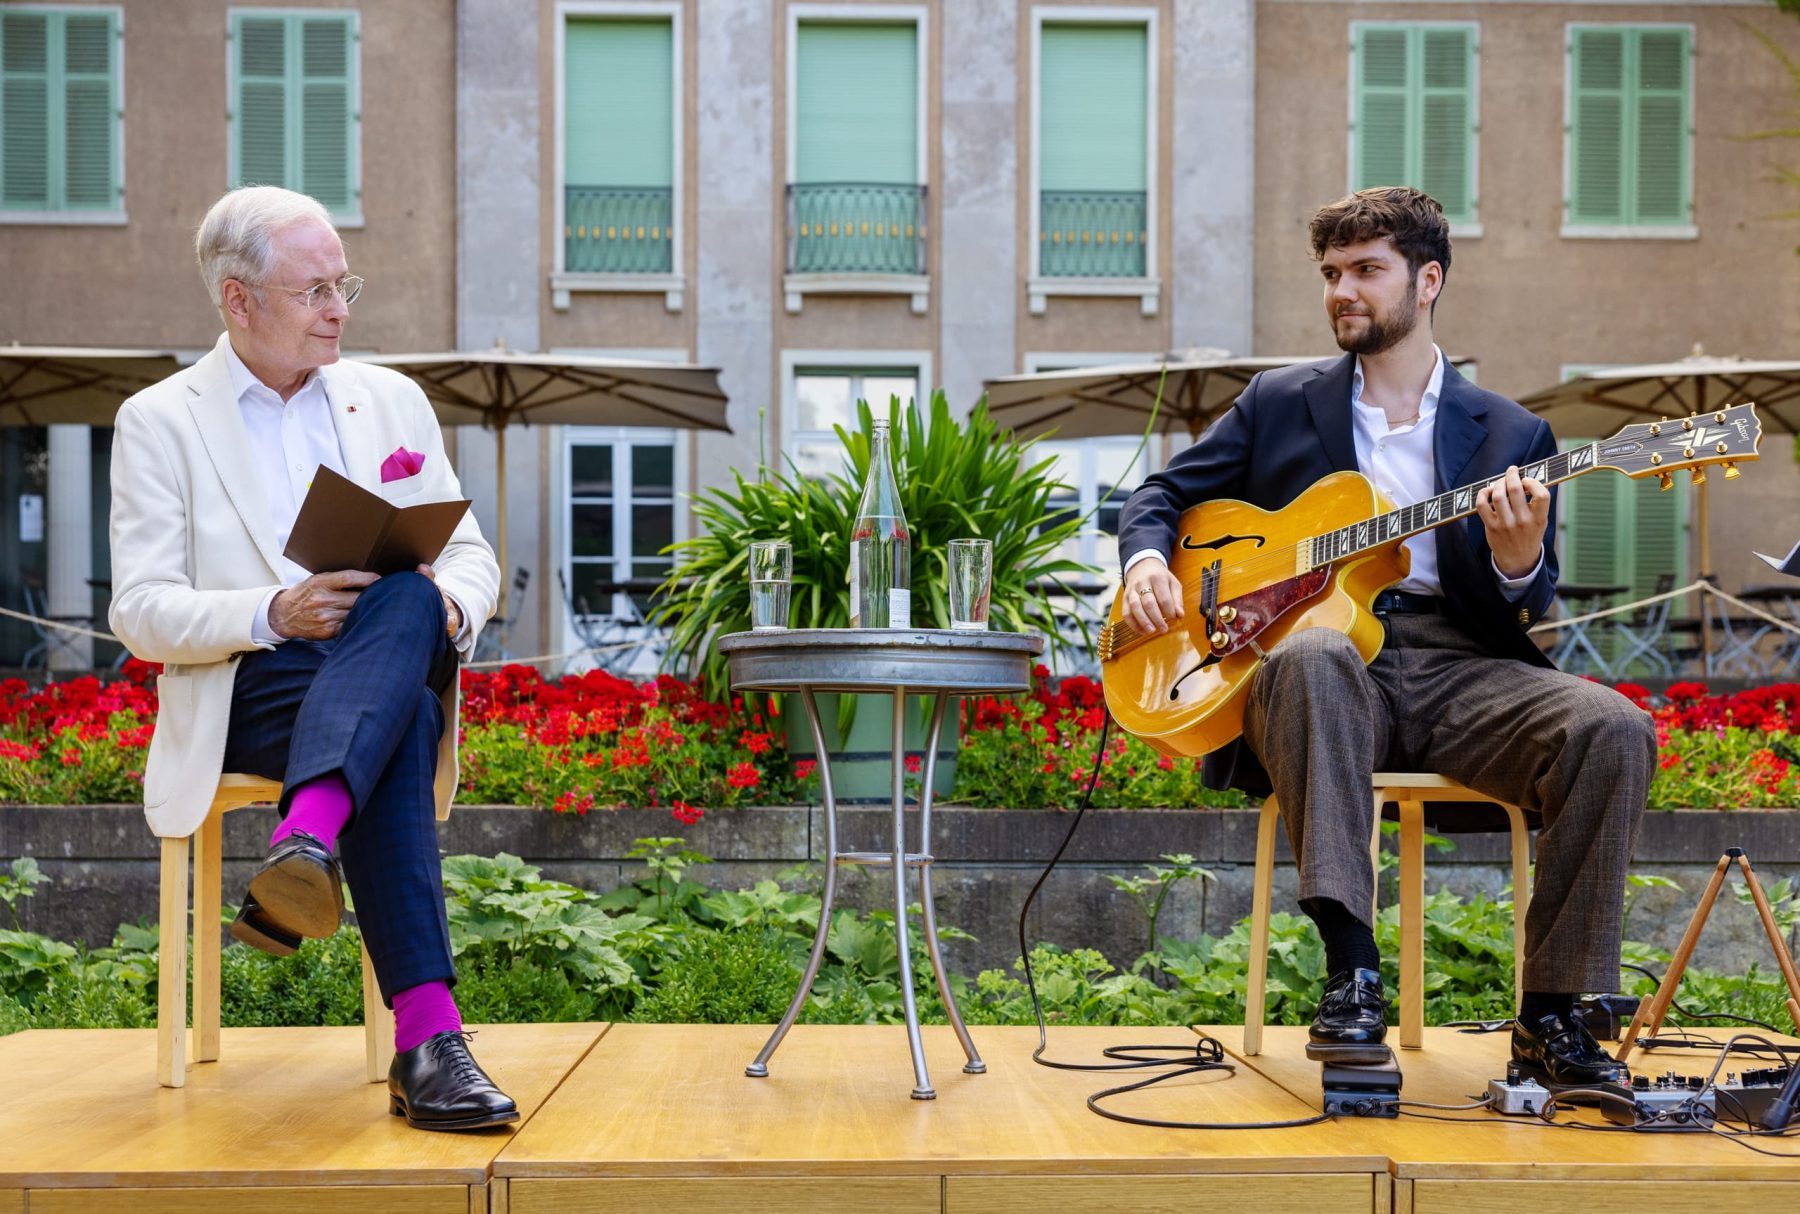 Zwei Persönen auf einer kleinen Bühne in einem Garten, der linke Mann hält ein Buch, der rechte eine Gitarre.